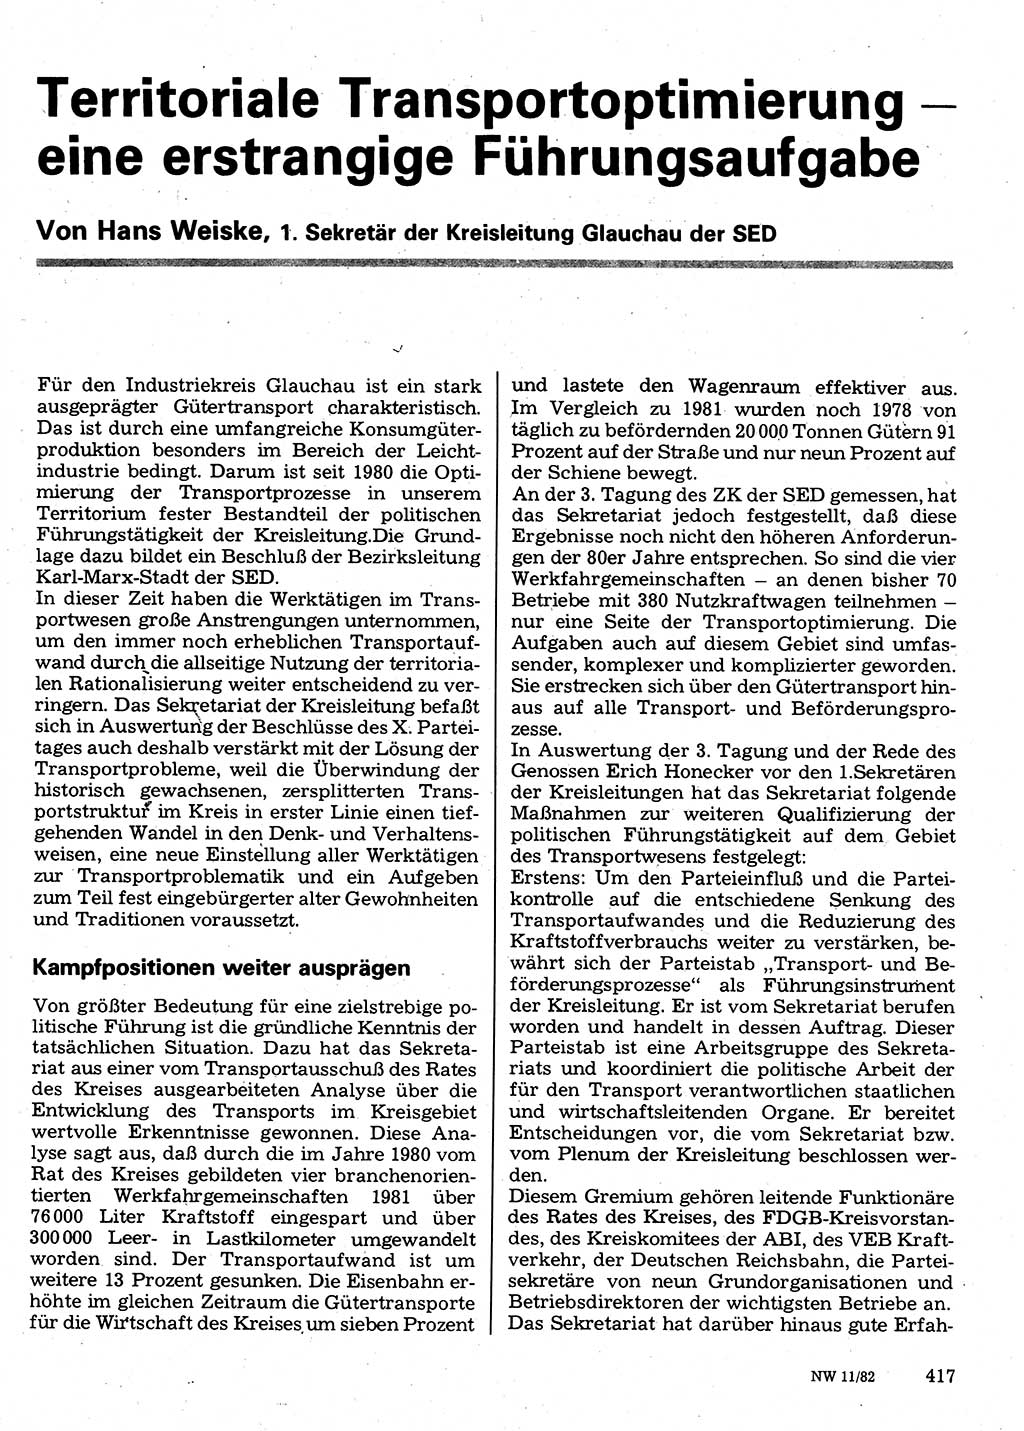 Neuer Weg (NW), Organ des Zentralkomitees (ZK) der SED (Sozialistische Einheitspartei Deutschlands) für Fragen des Parteilebens, 37. Jahrgang [Deutsche Demokratische Republik (DDR)] 1982, Seite 417 (NW ZK SED DDR 1982, S. 417)